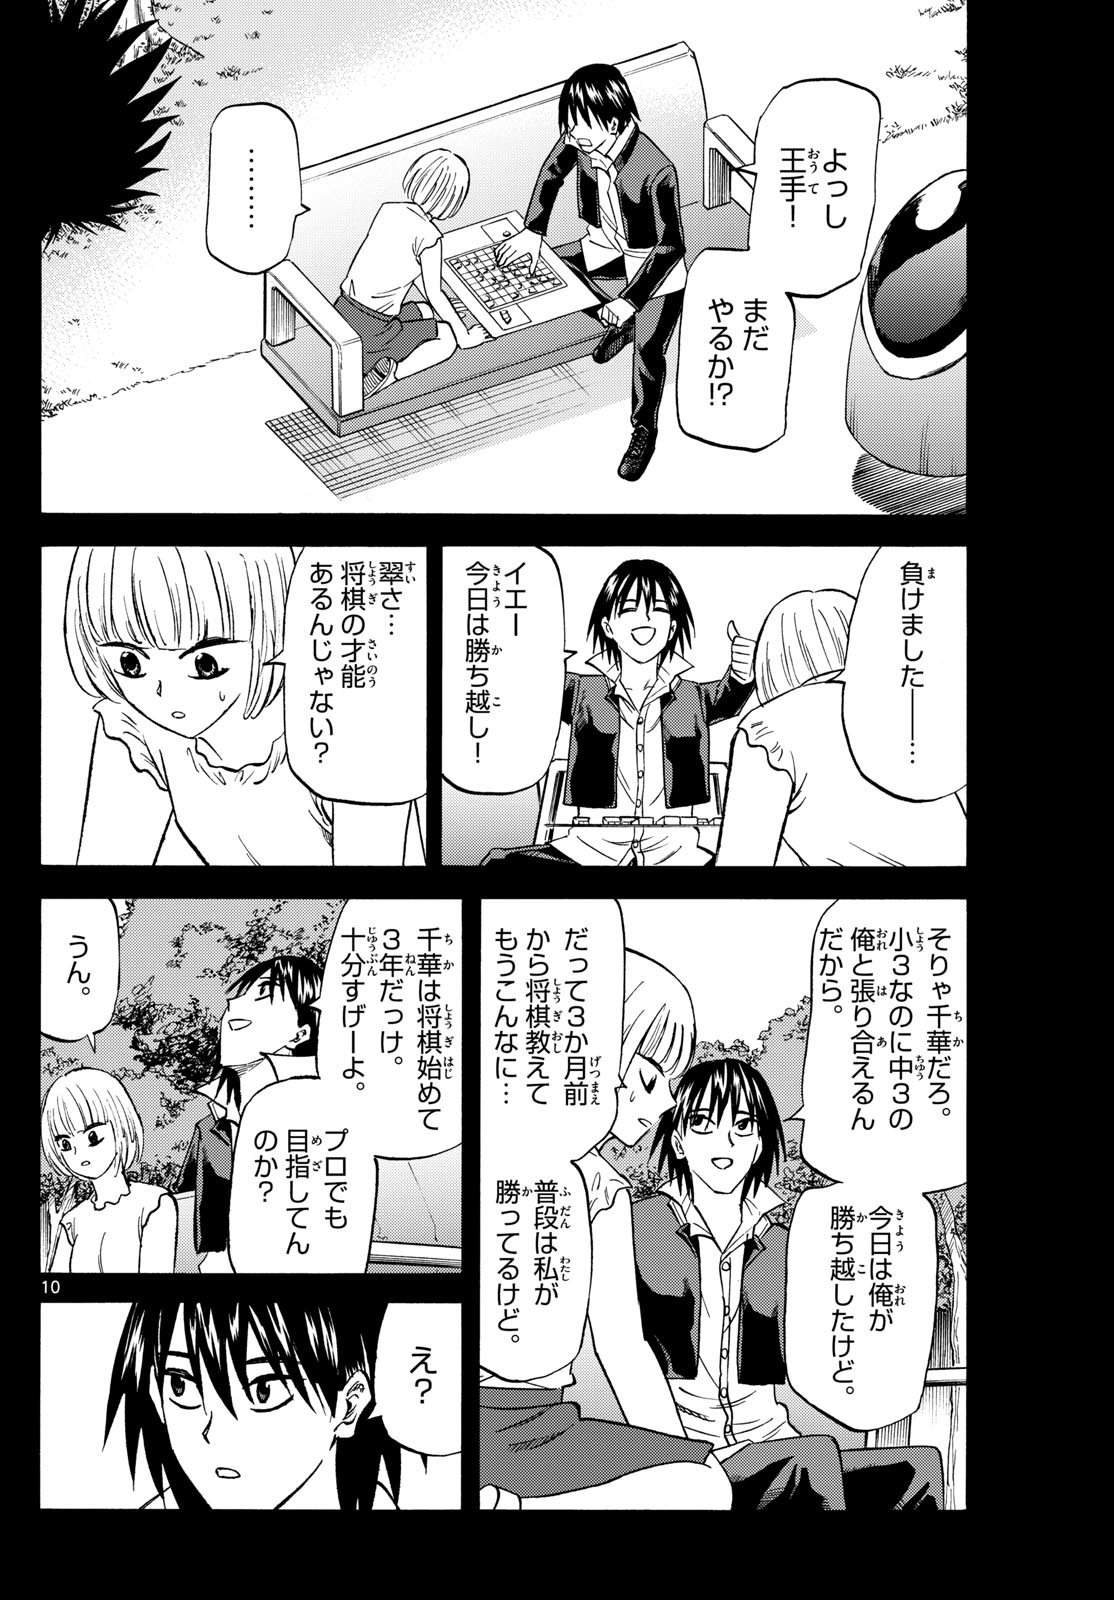 Tatsu to Ichigo - Chapter 193 - Page 10